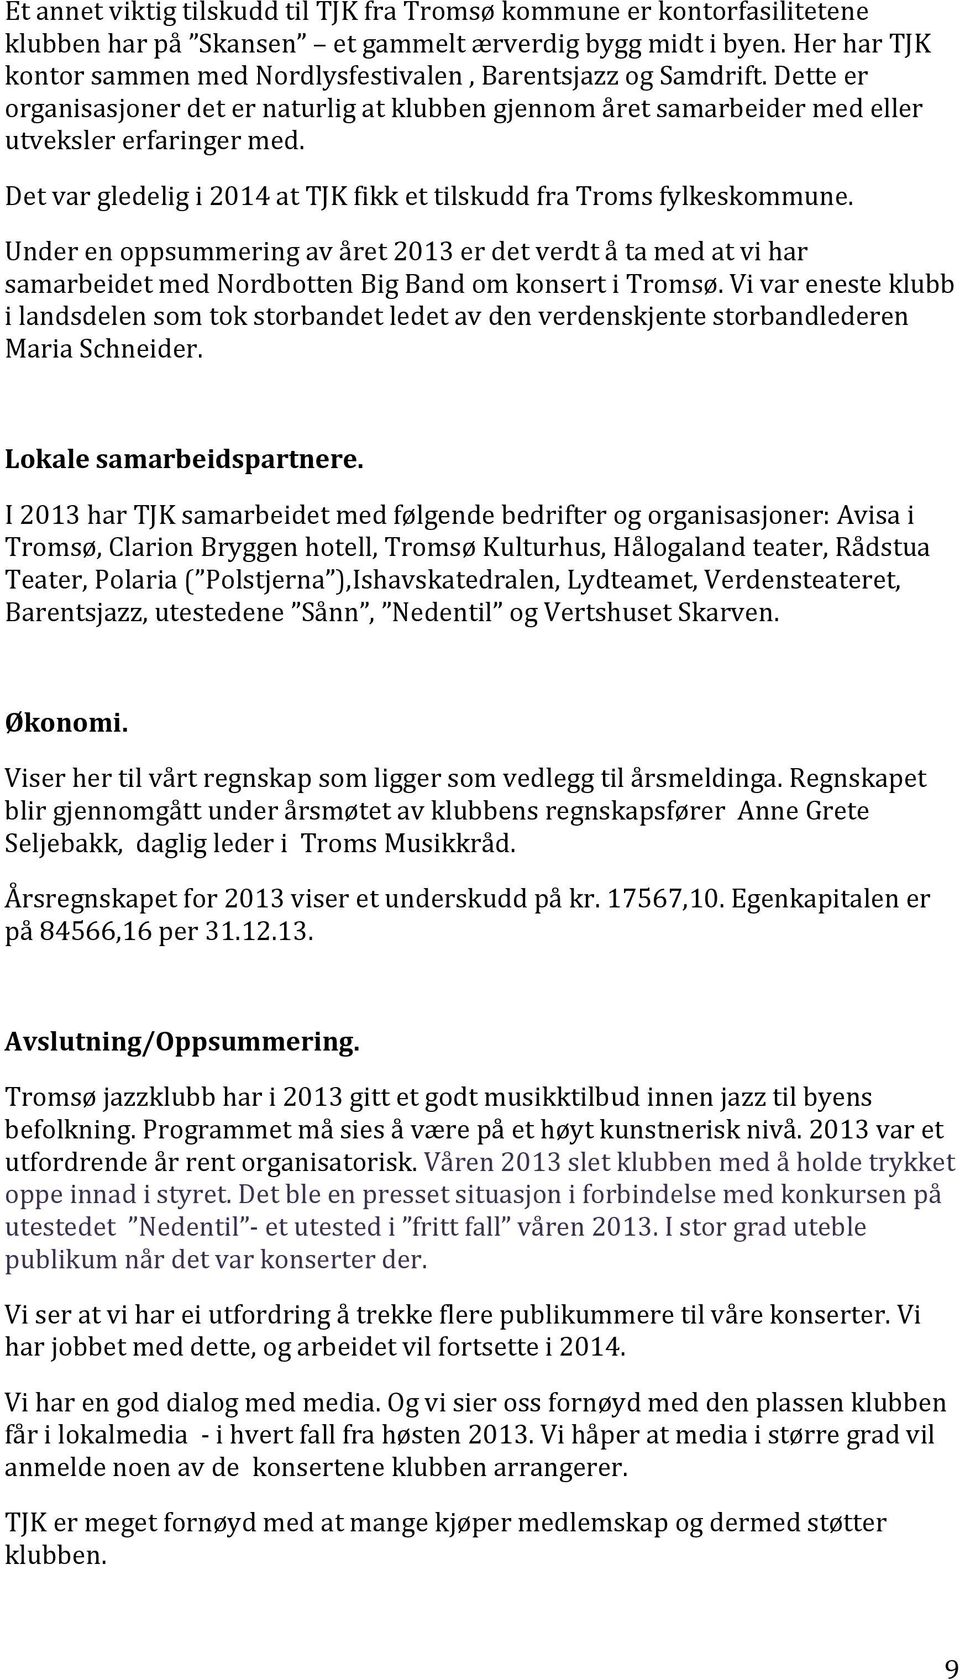 Det var gledelig i 2014 at TJK fikk et tilskudd fra Troms fylkeskommune. Under en oppsummering av året 2013 er det verdt å ta med at vi har samarbeidet med Nordbotten Big Band om konsert i Tromsø.